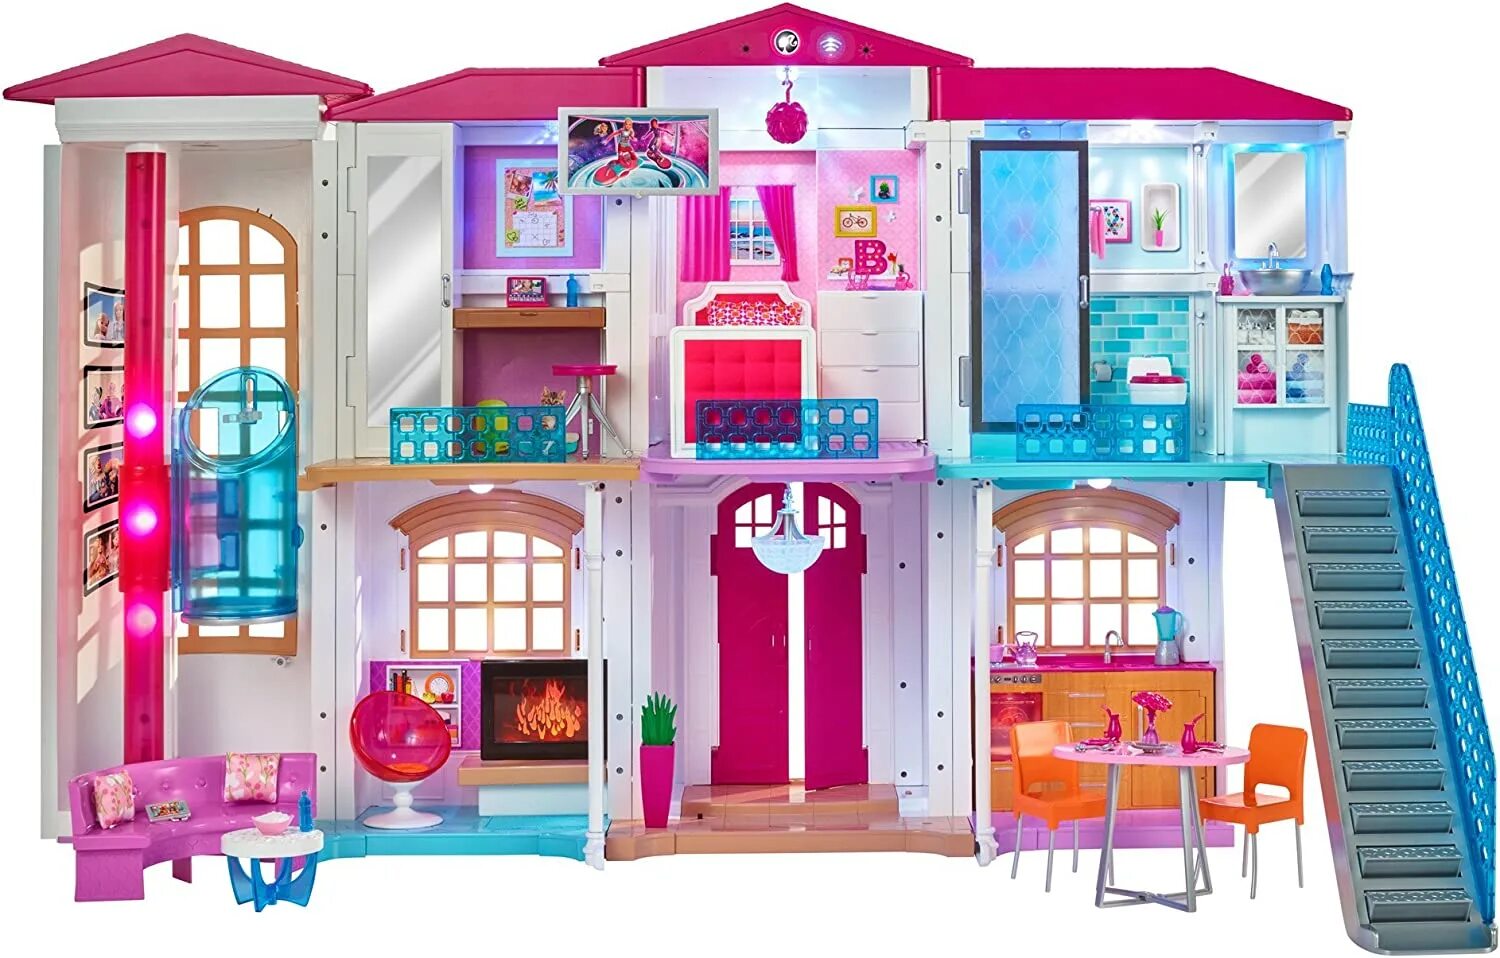 Той хаус. Барби Дрим Хаус. Домик для кукол Барби Dreamhouse. Дом мечты Барби Дрим Хаус. Barbie дом мечты Dreamhouse.